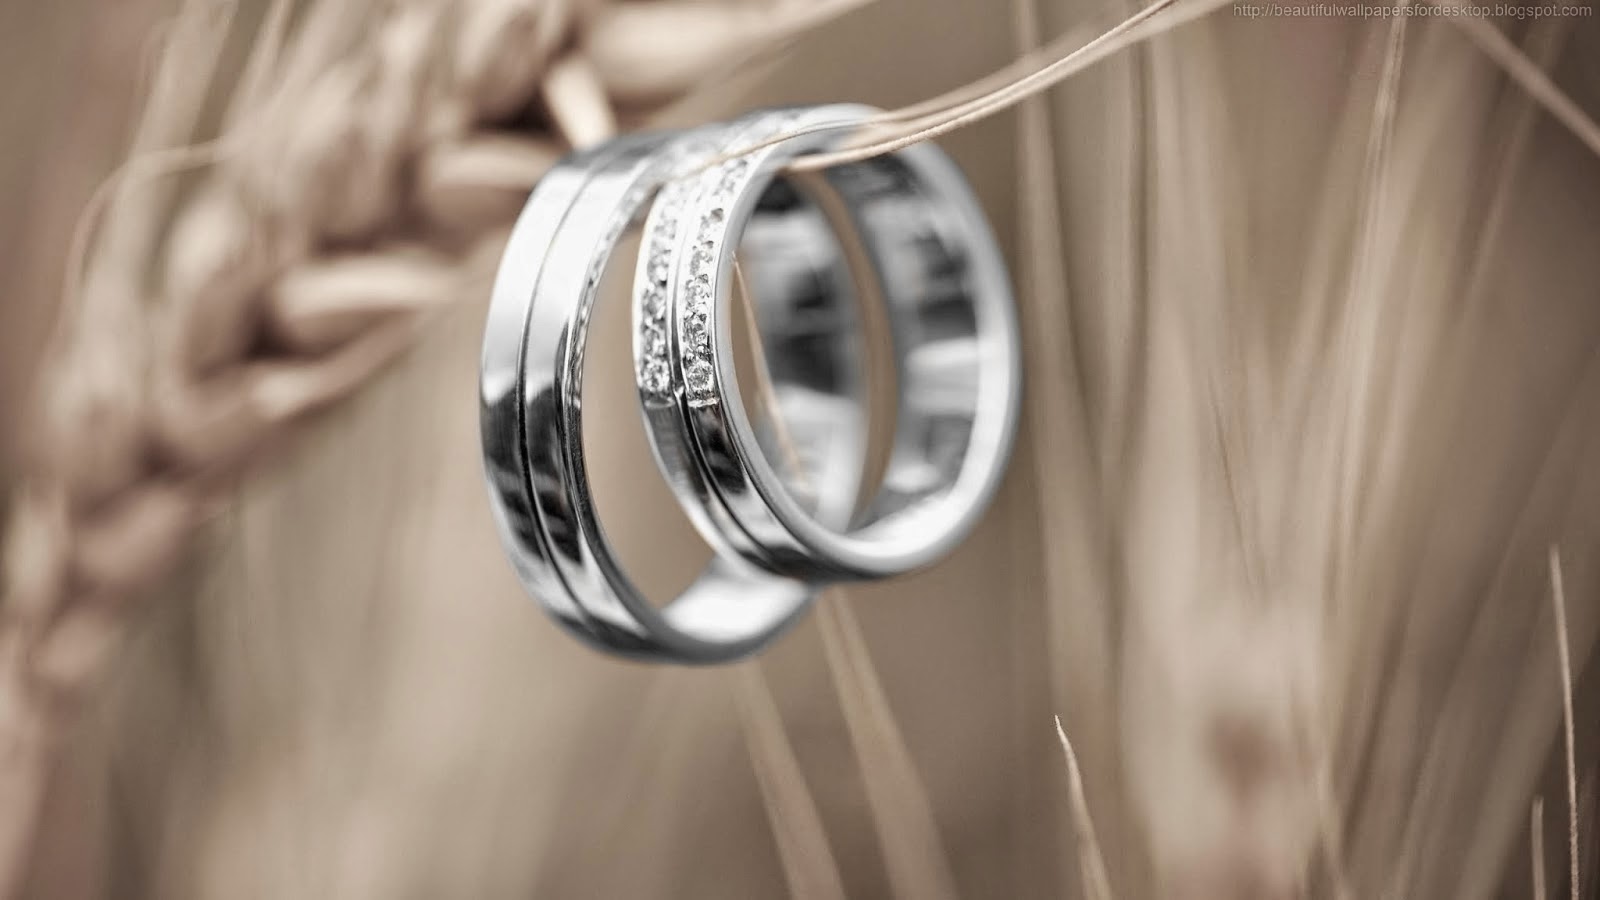 リング壁紙,リング,金属,結婚式用品,結婚指輪,婚約指輪